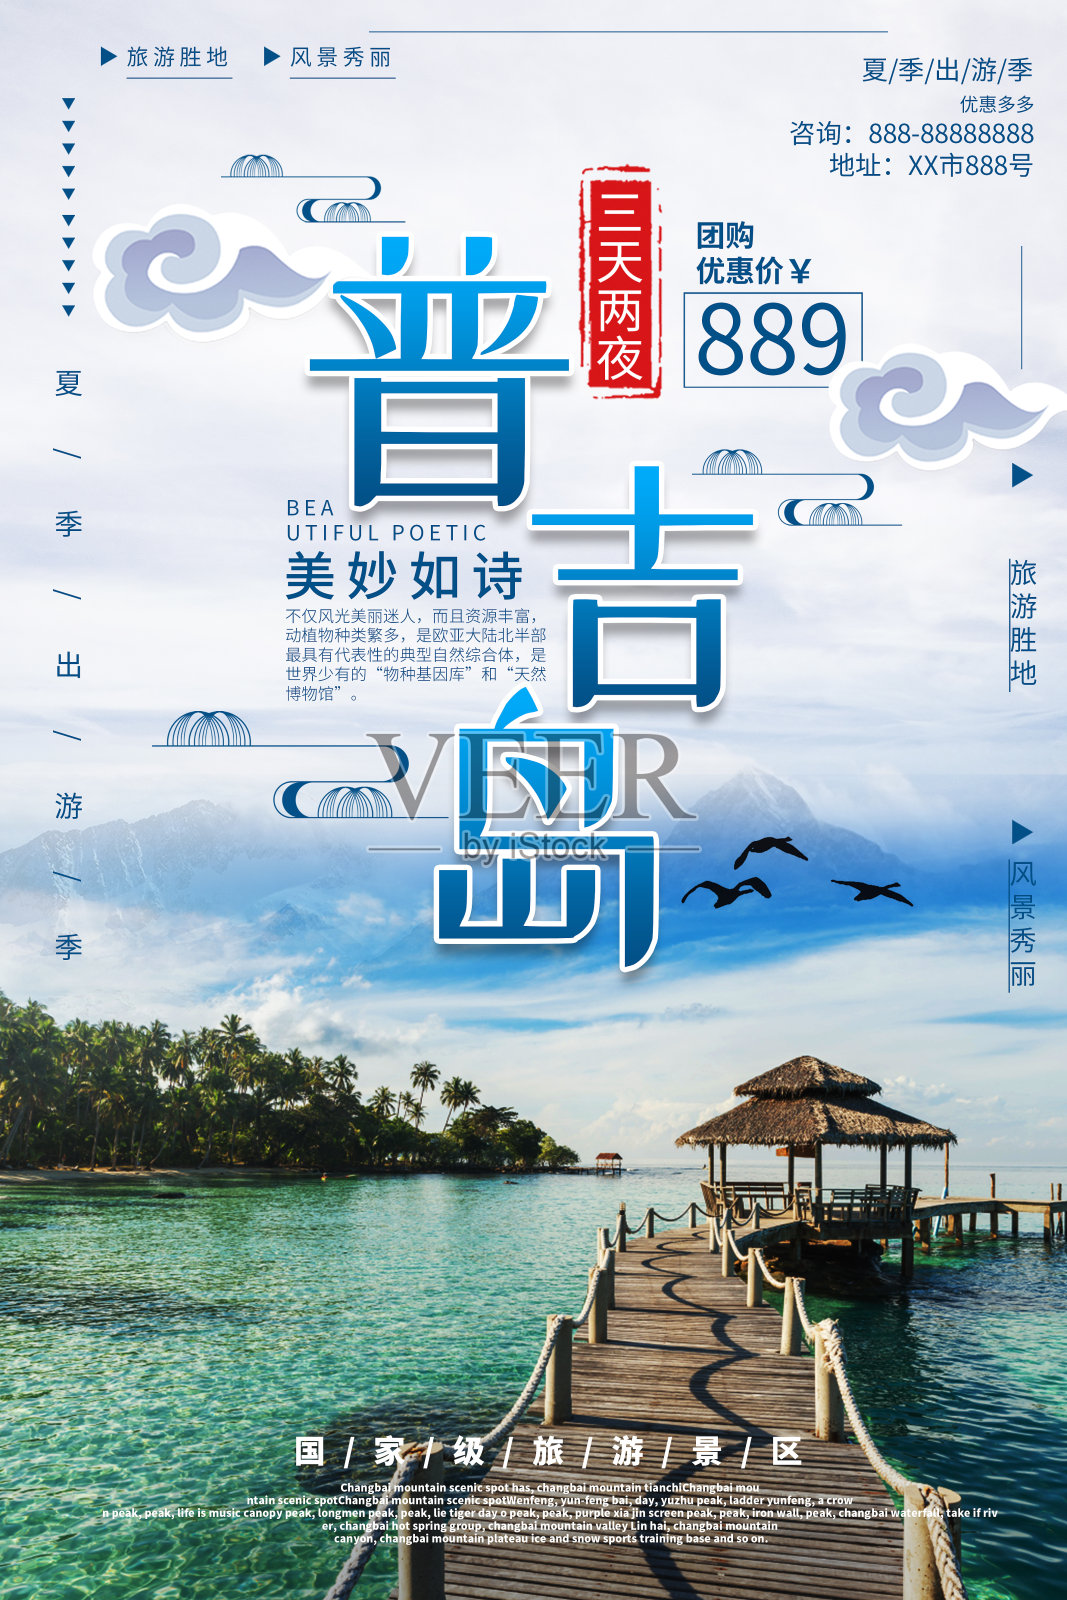 大气普吉岛旅游海报设计设计模板素材